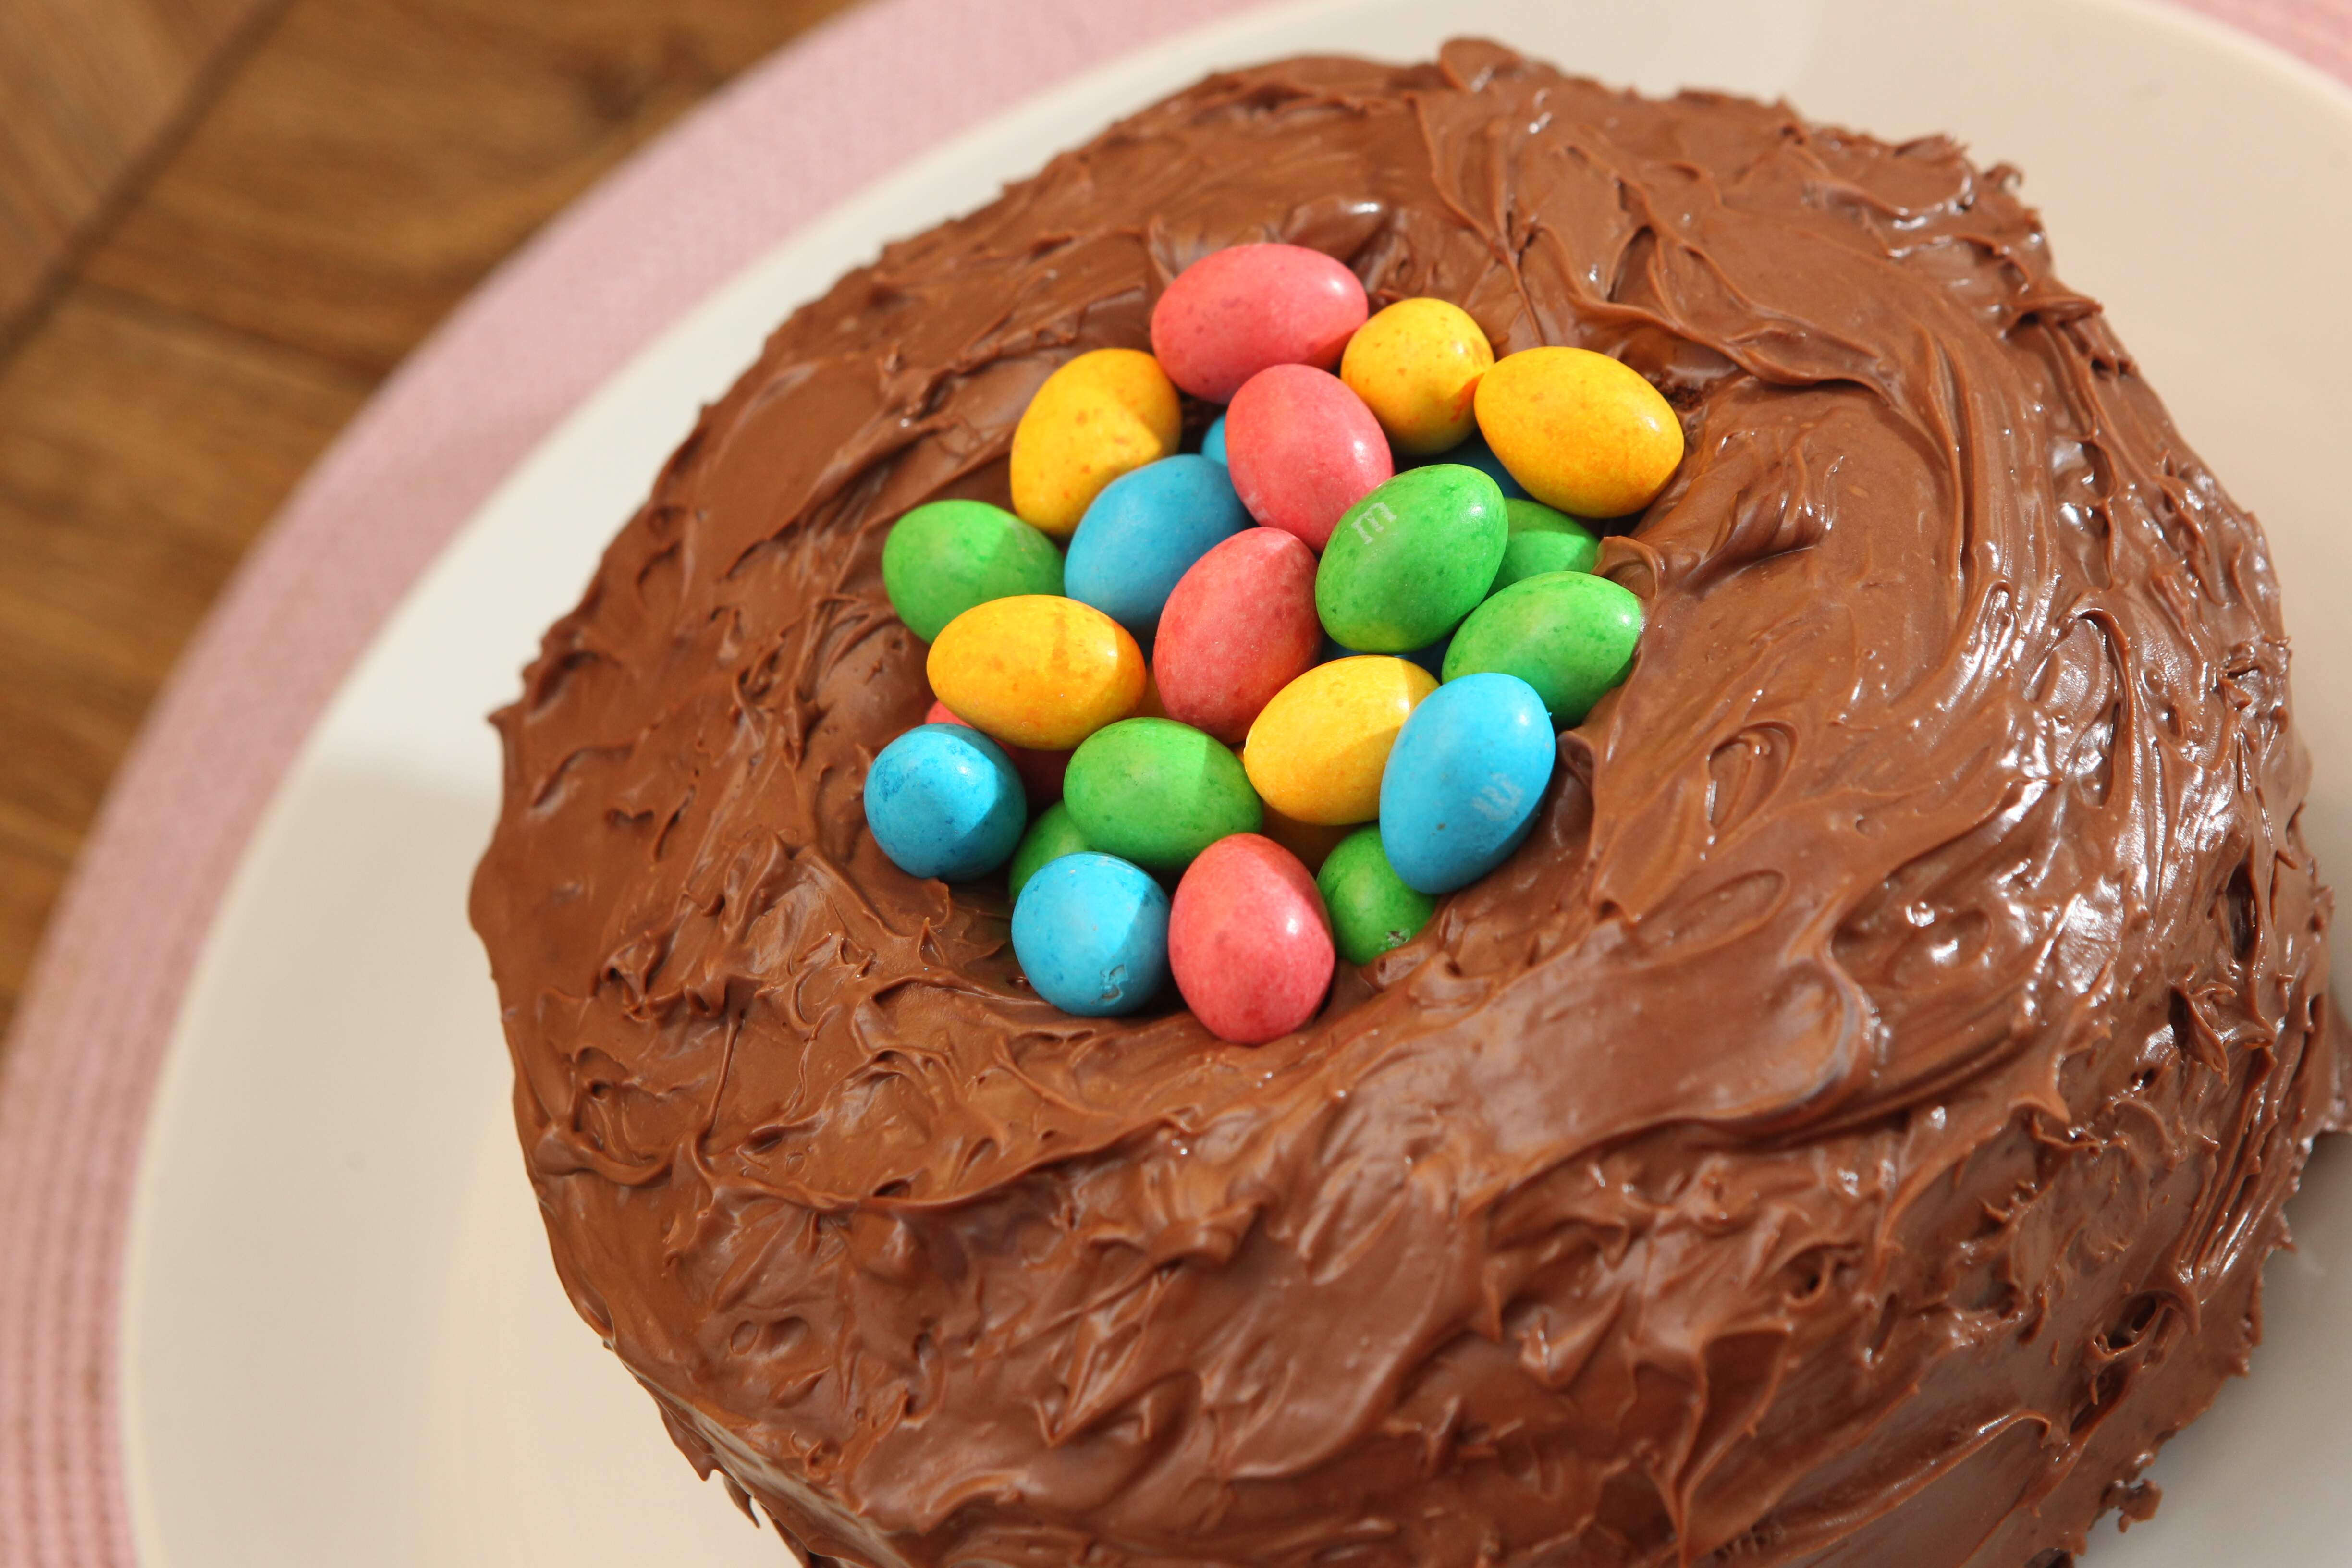 Este bolo imita um ninho cheio de ovinhos coloridos